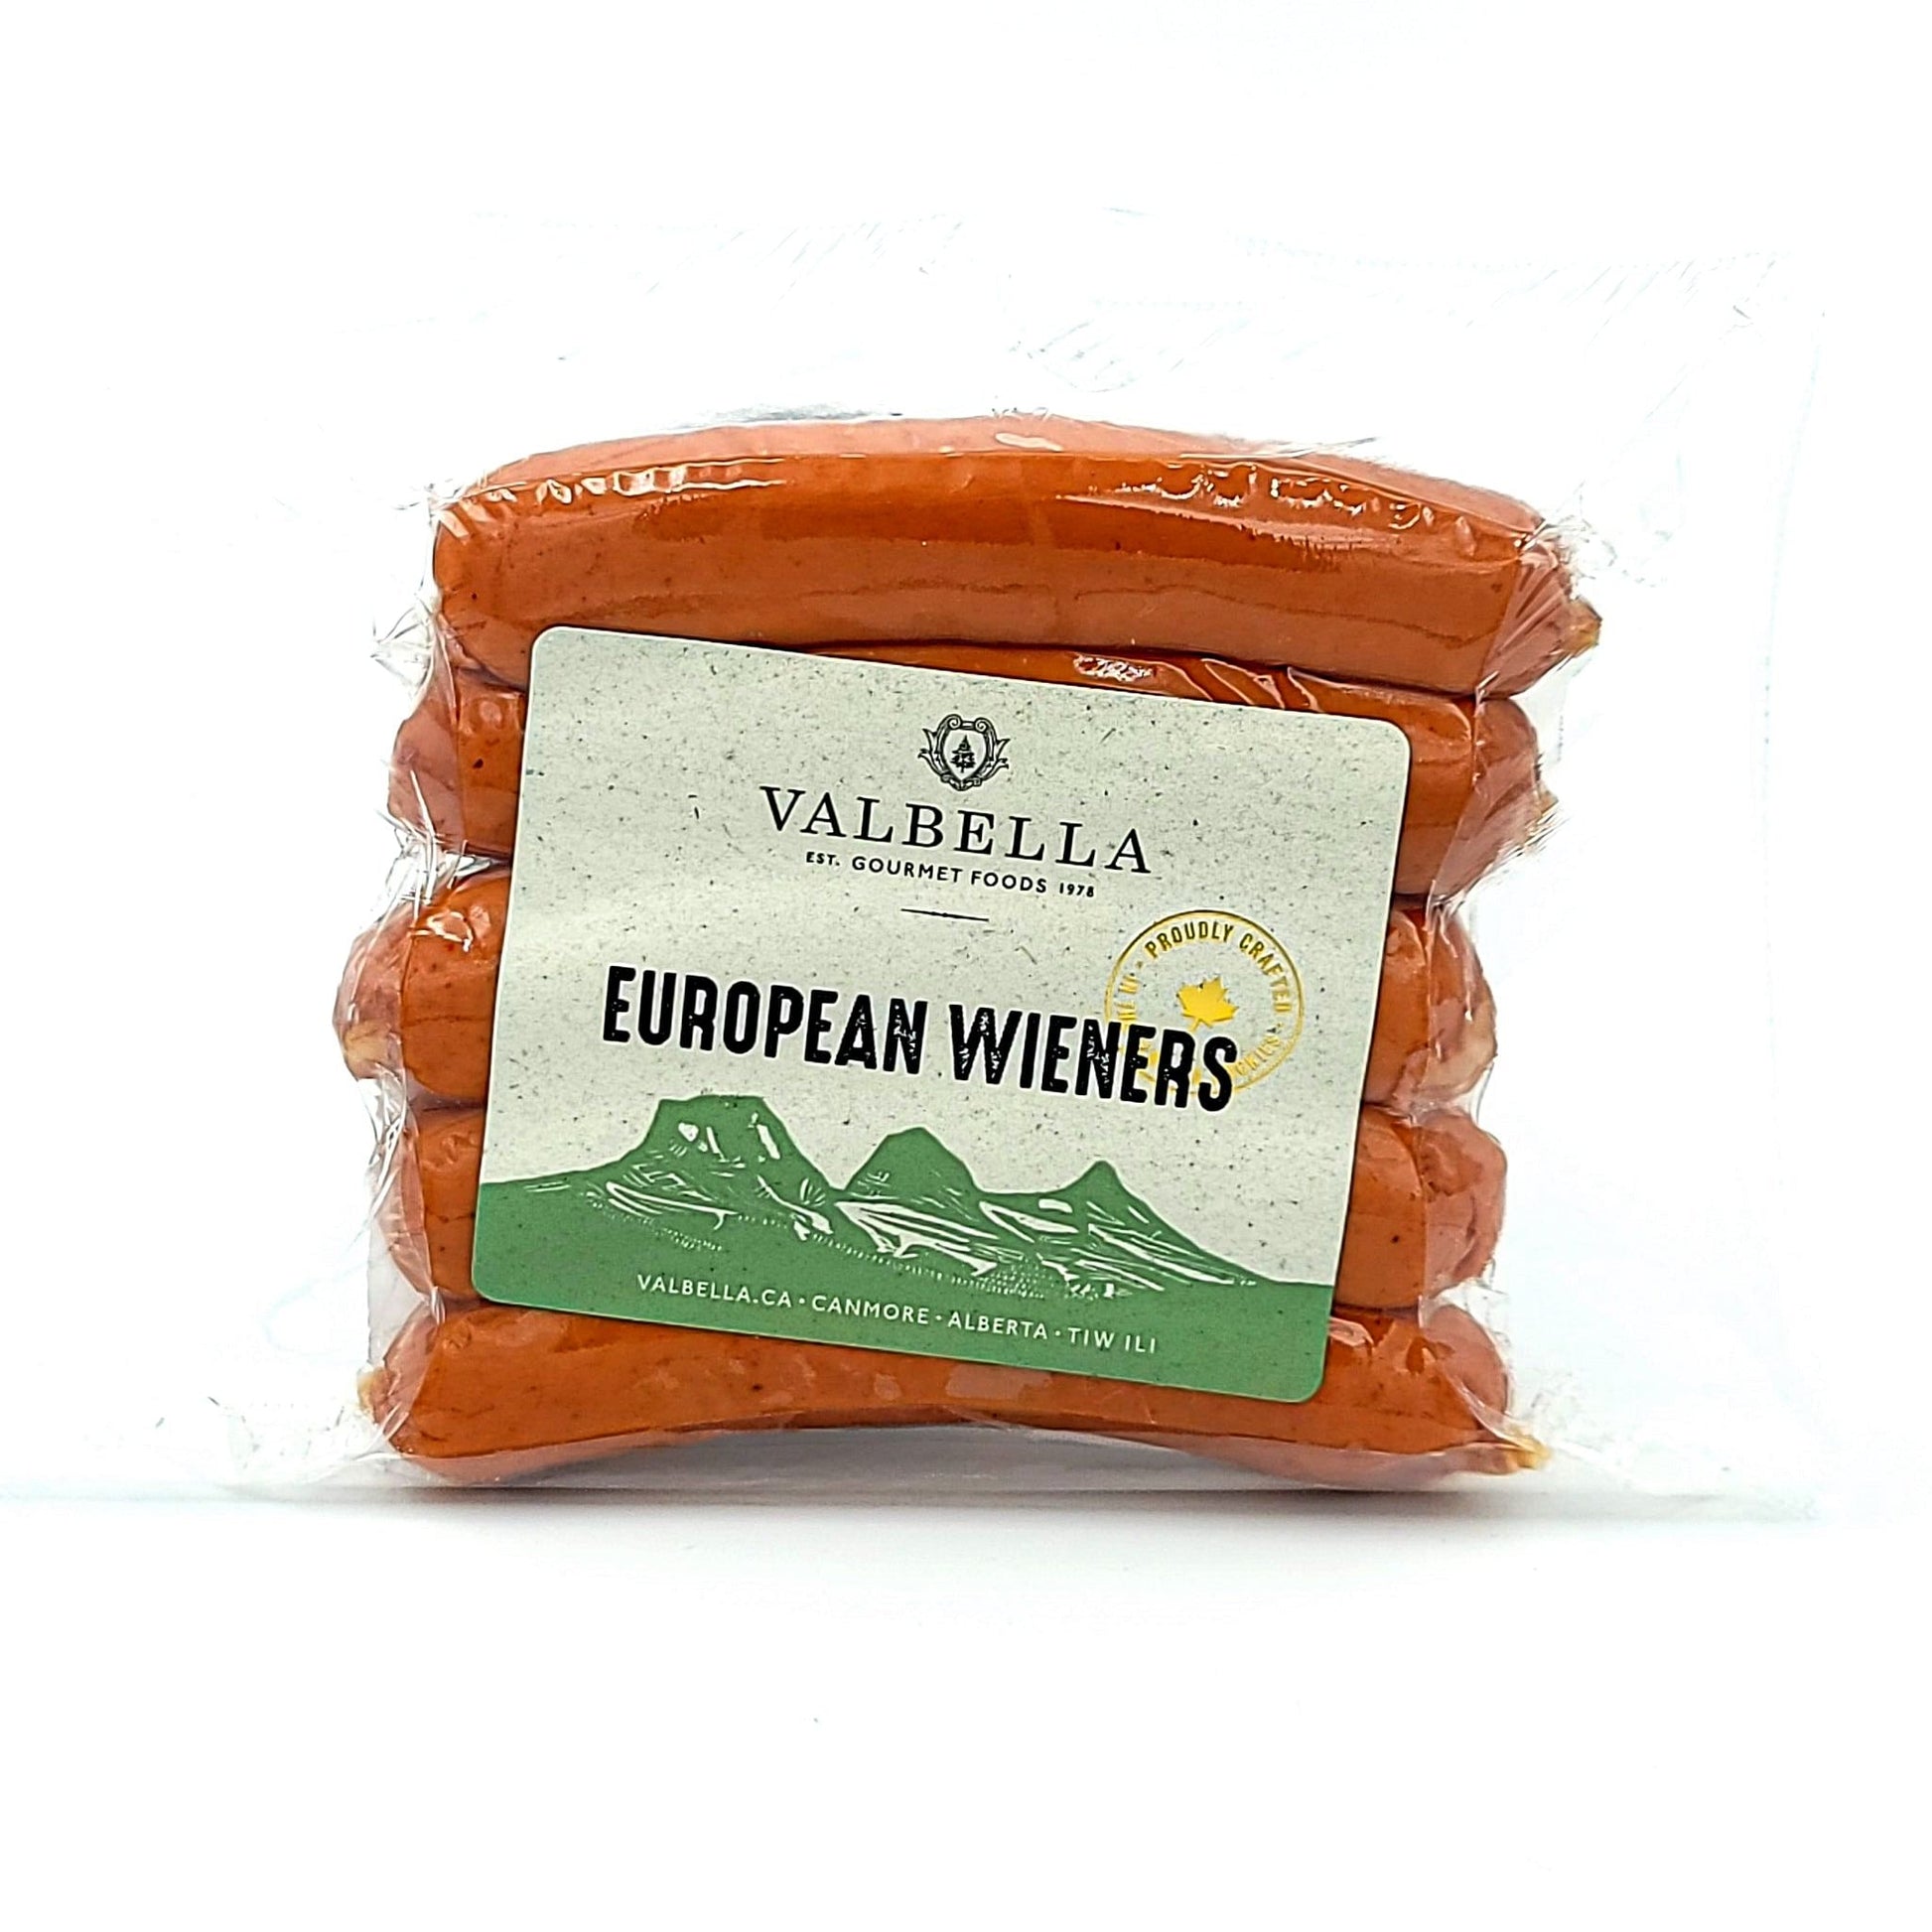 European Wieners - Valbella Gourmet Foods